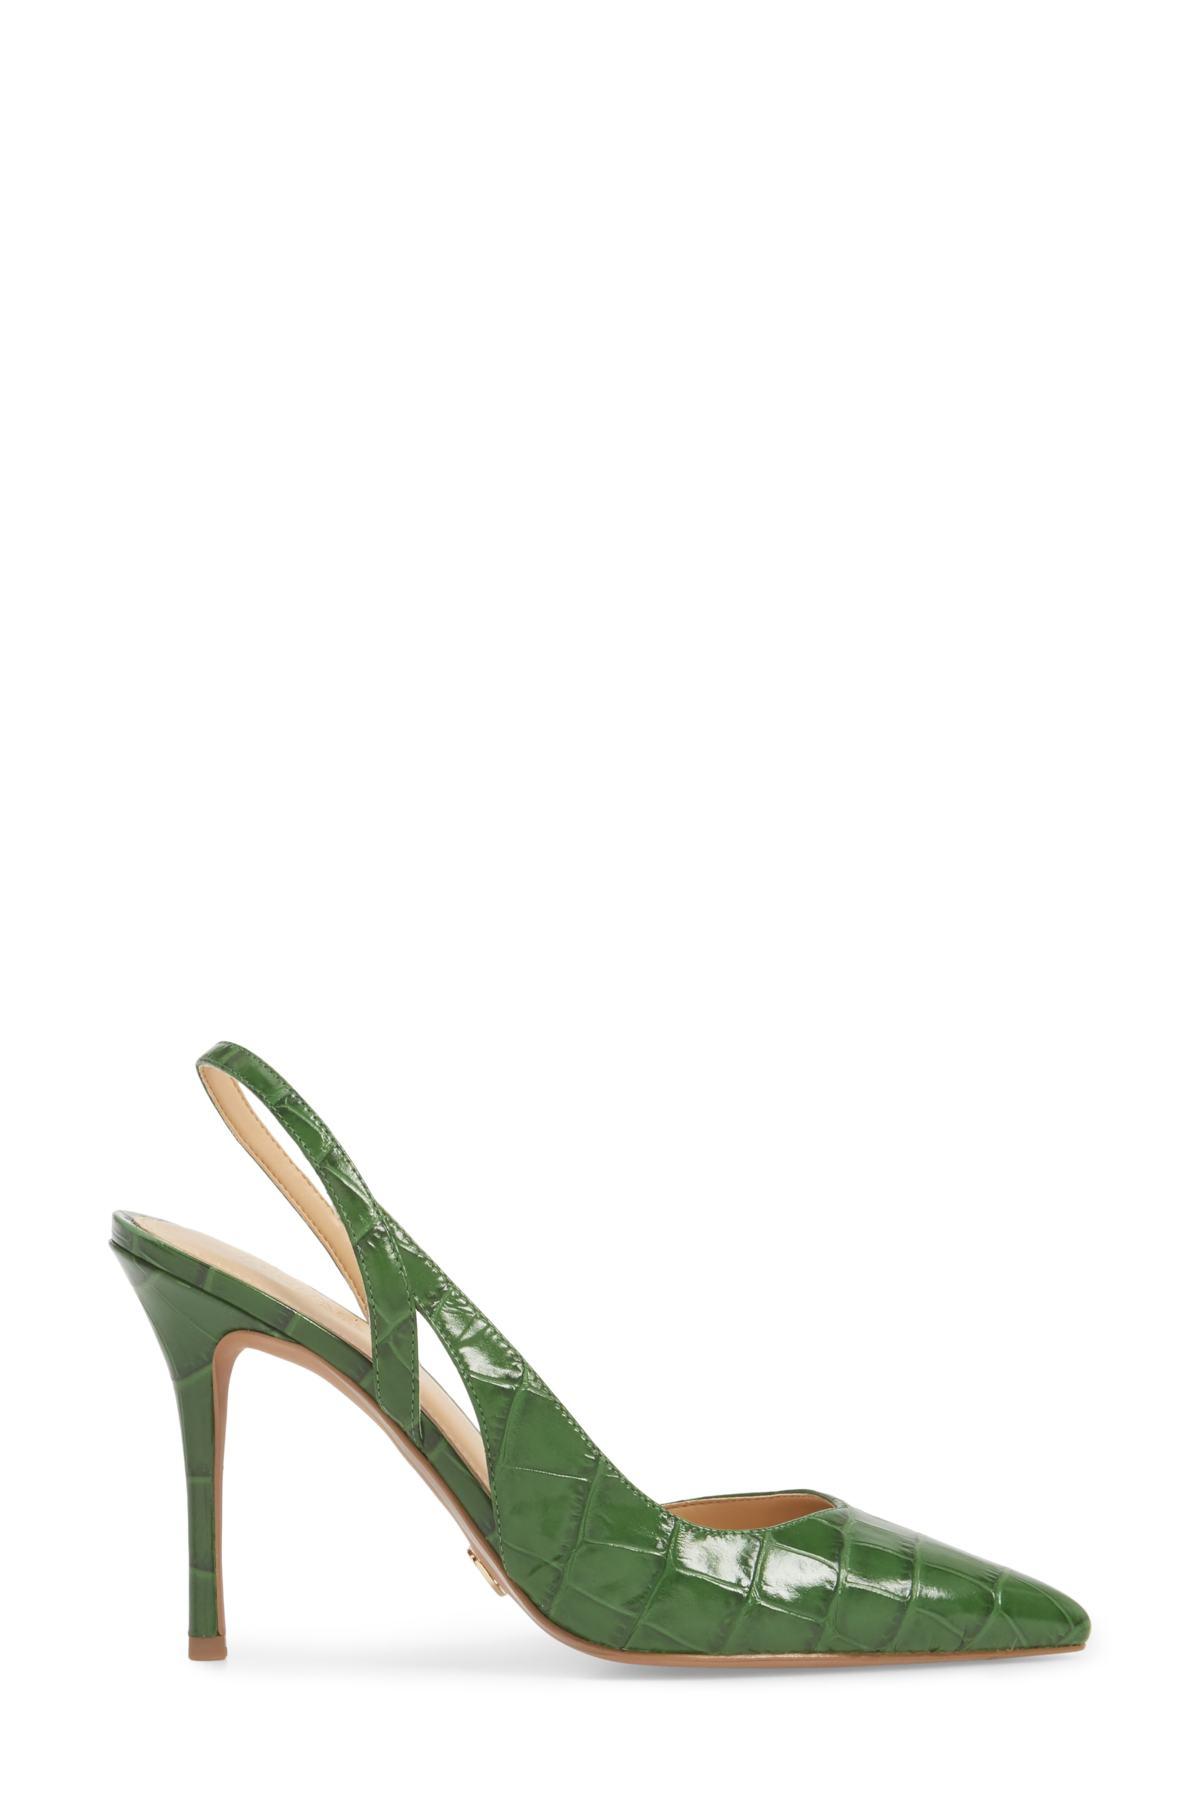 michael kors green heels